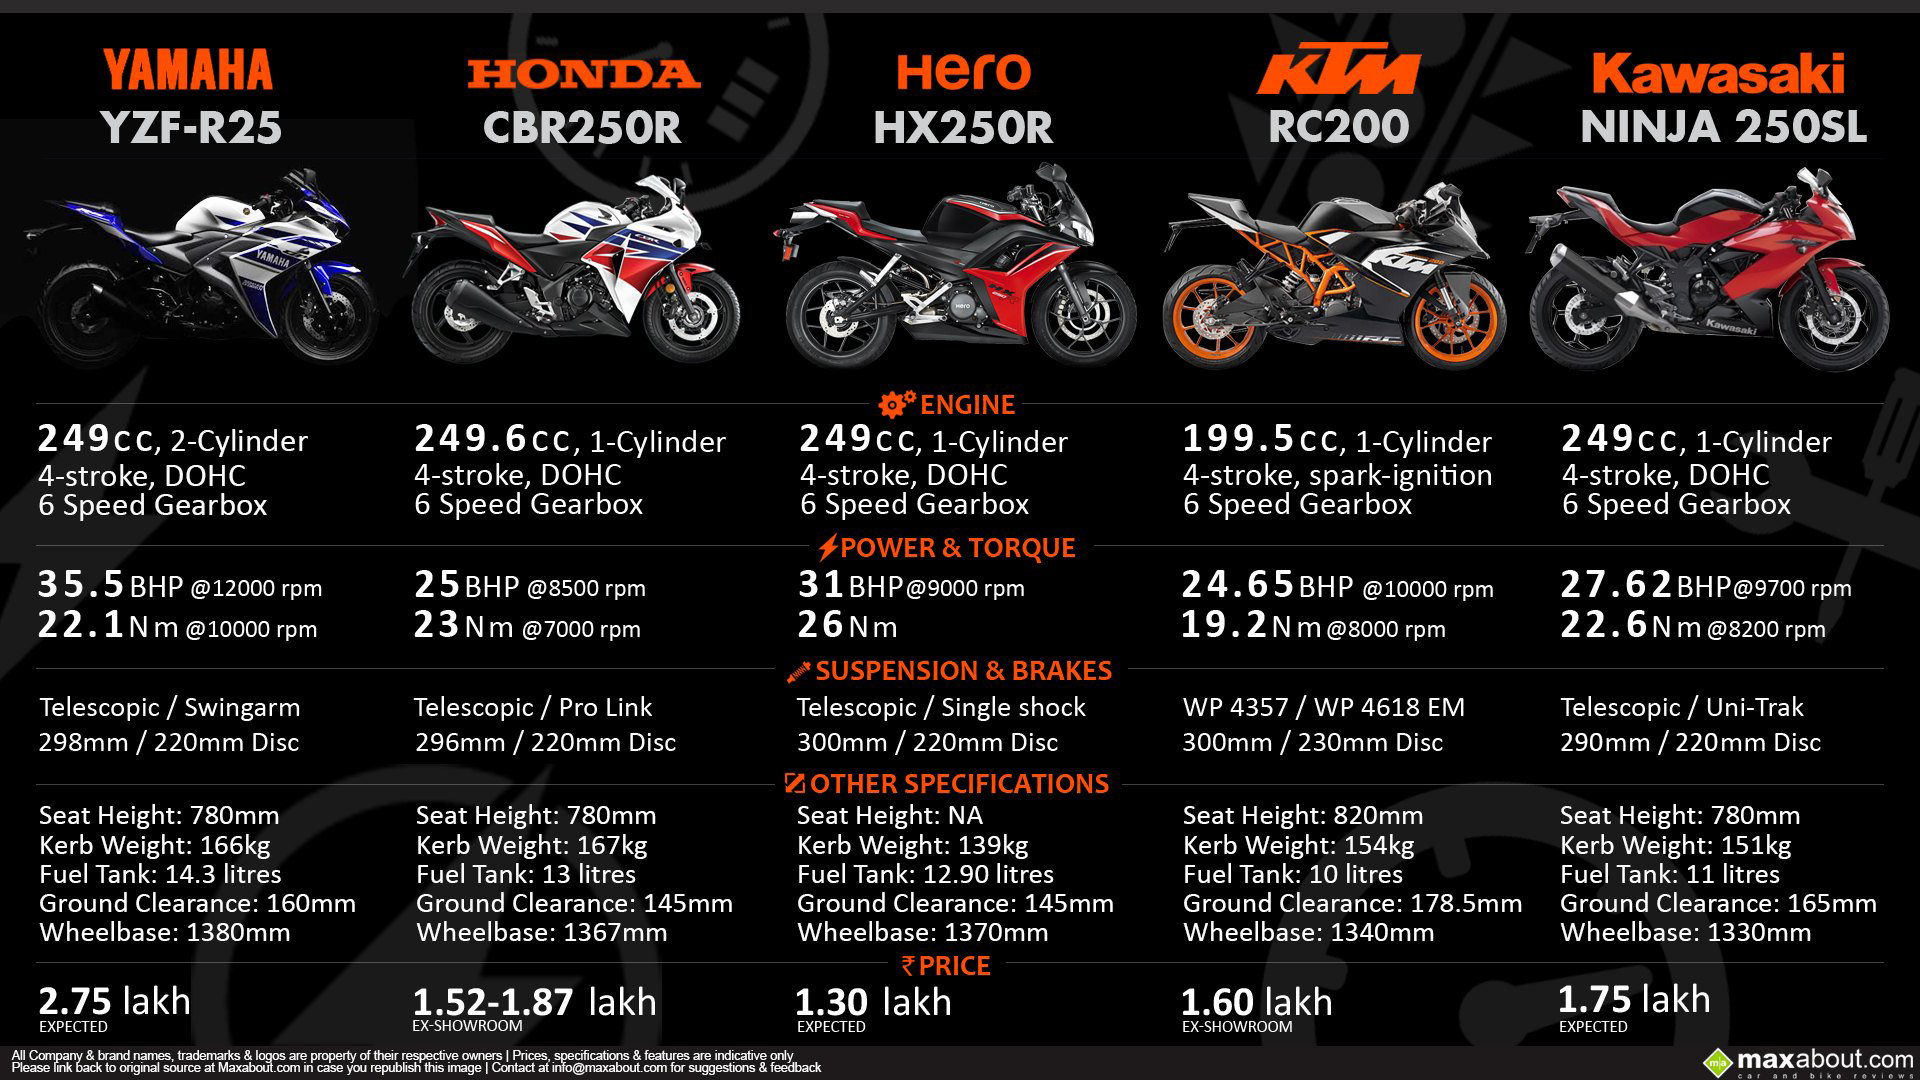 Yamaha YZF-R25 vs CBR250R vs HX250R vs KTM RC200 vs Ninja 250SL